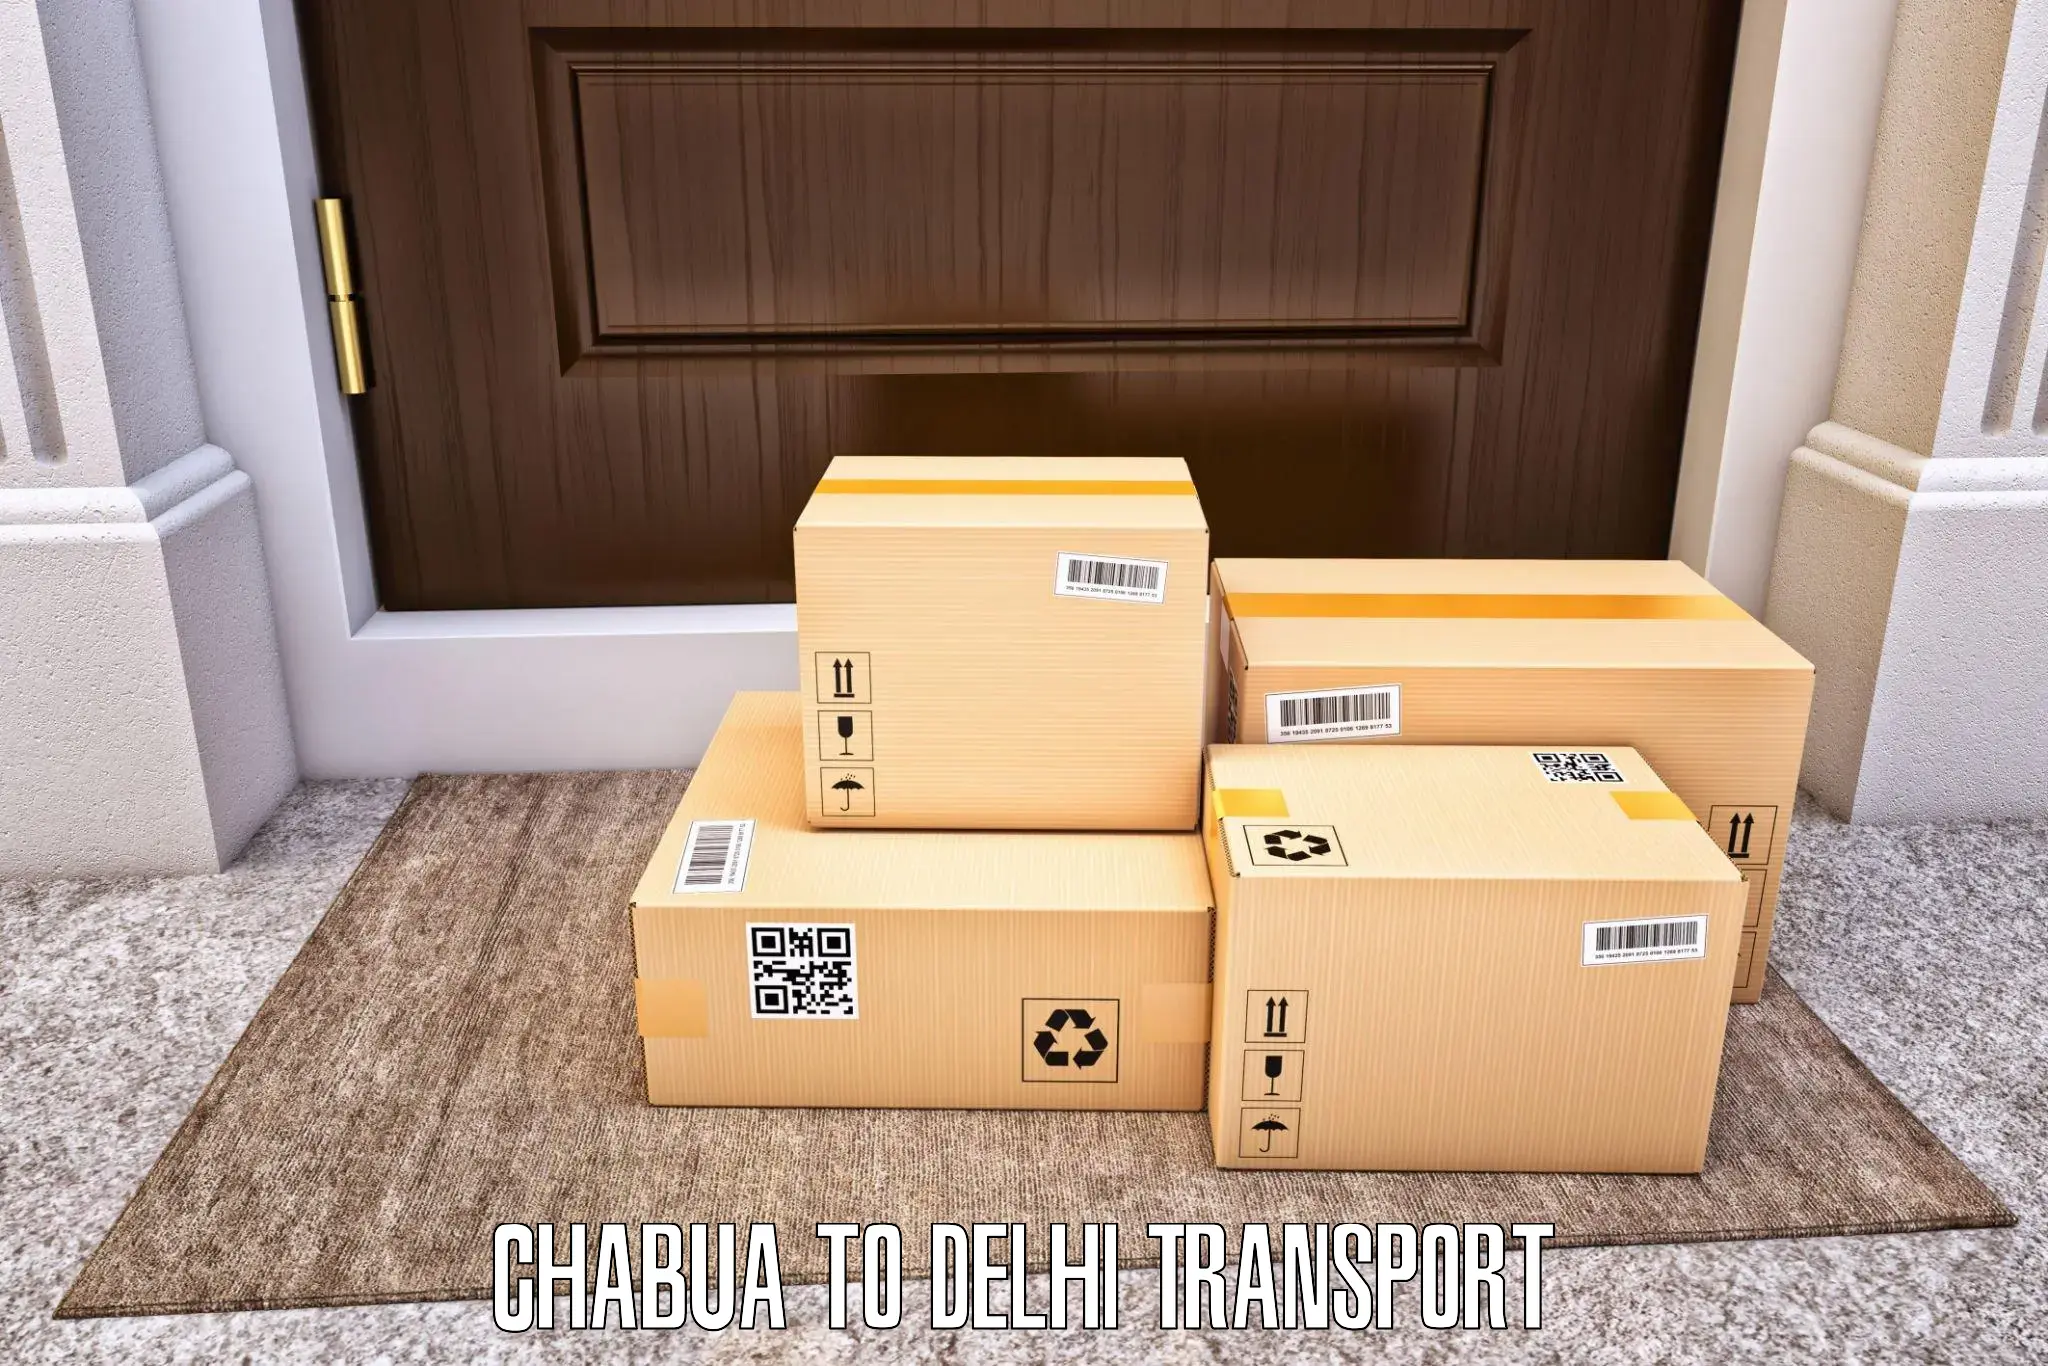 Transport services Chabua to Delhi